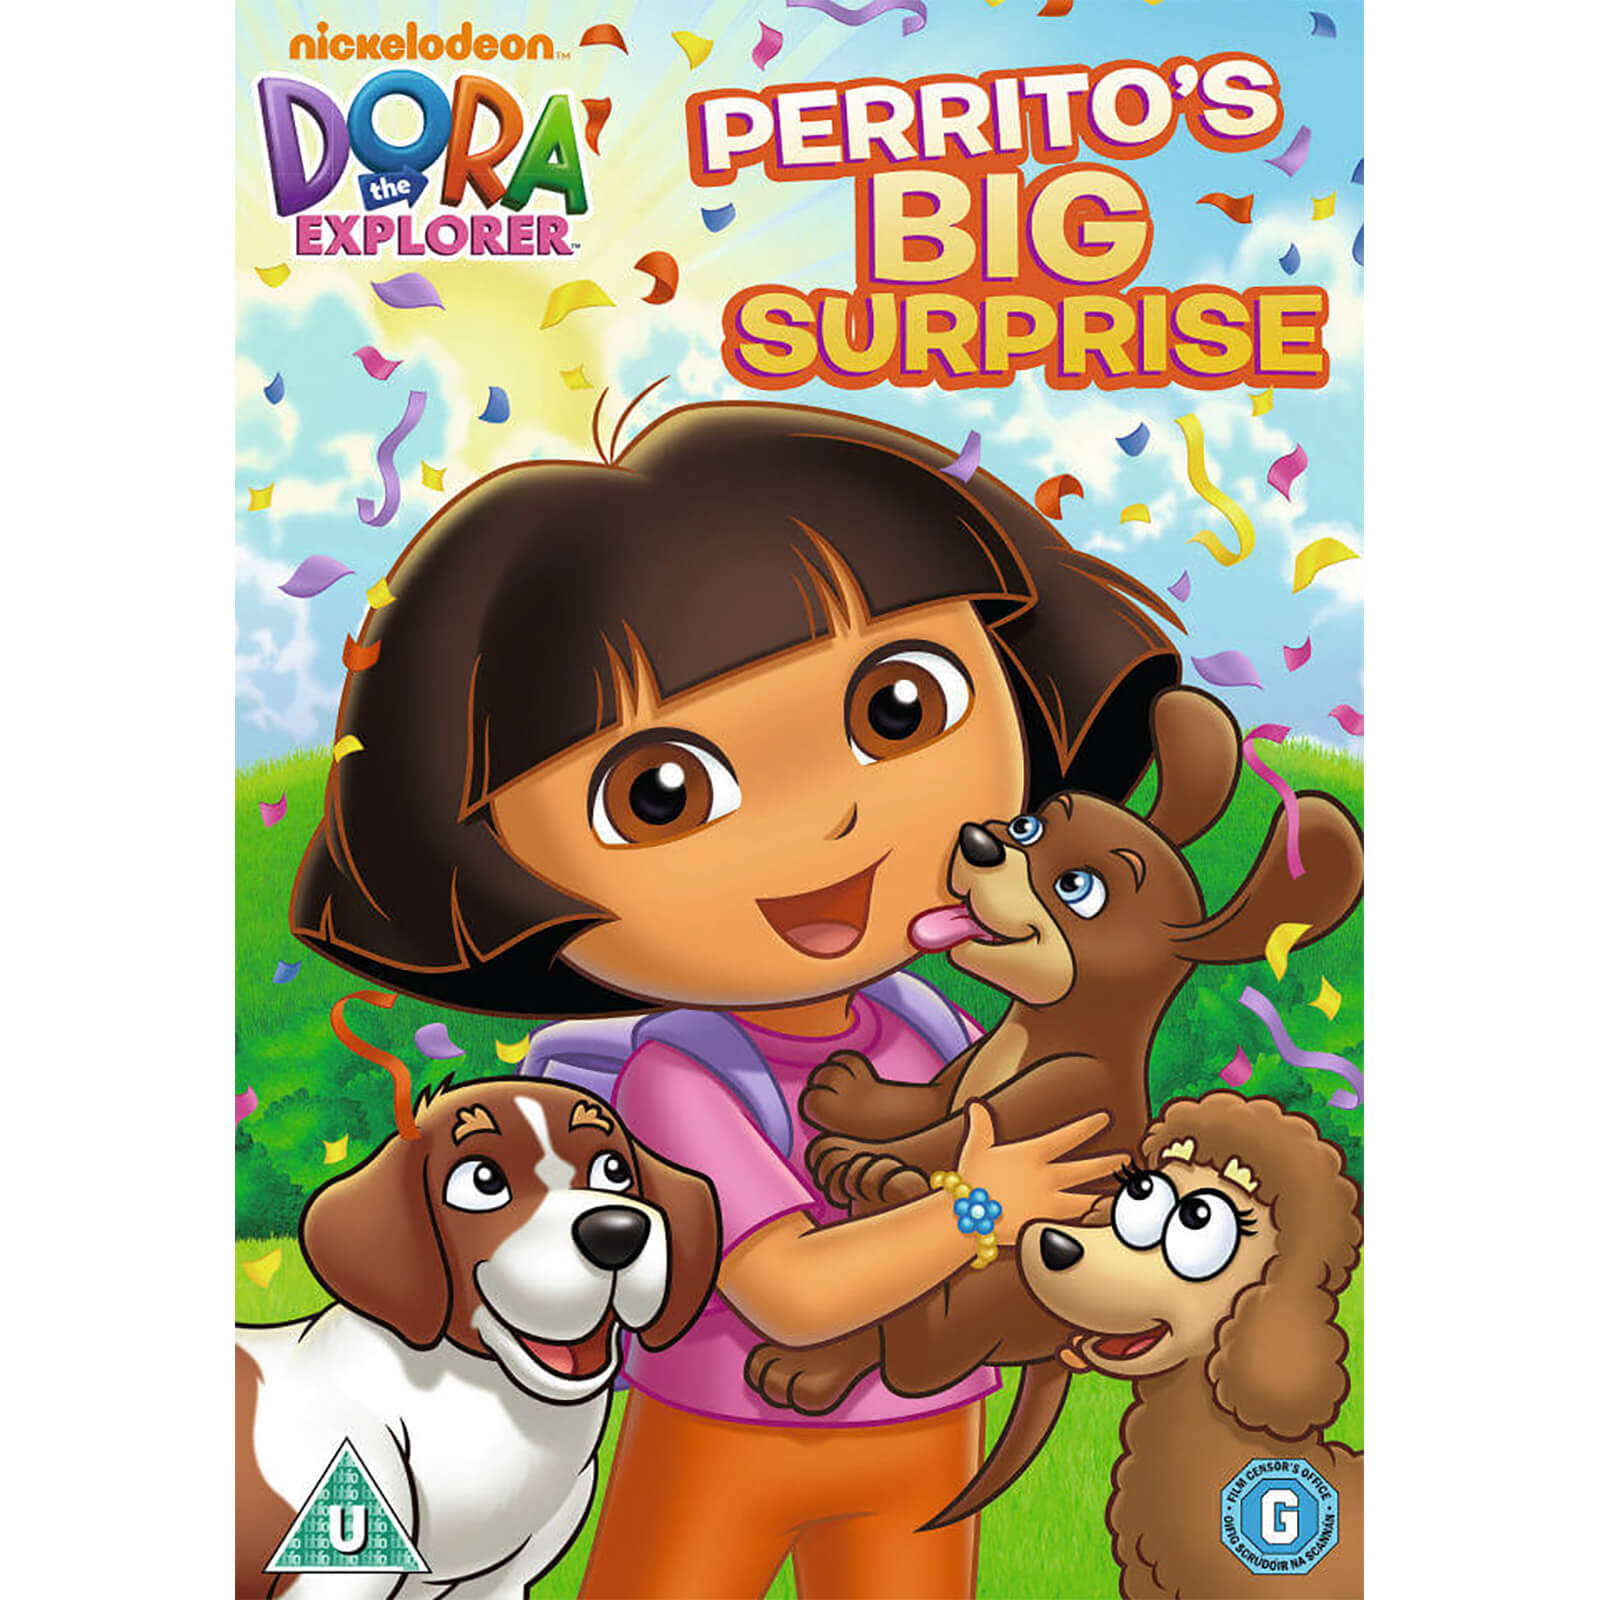 Dora the Explorer: Perrito